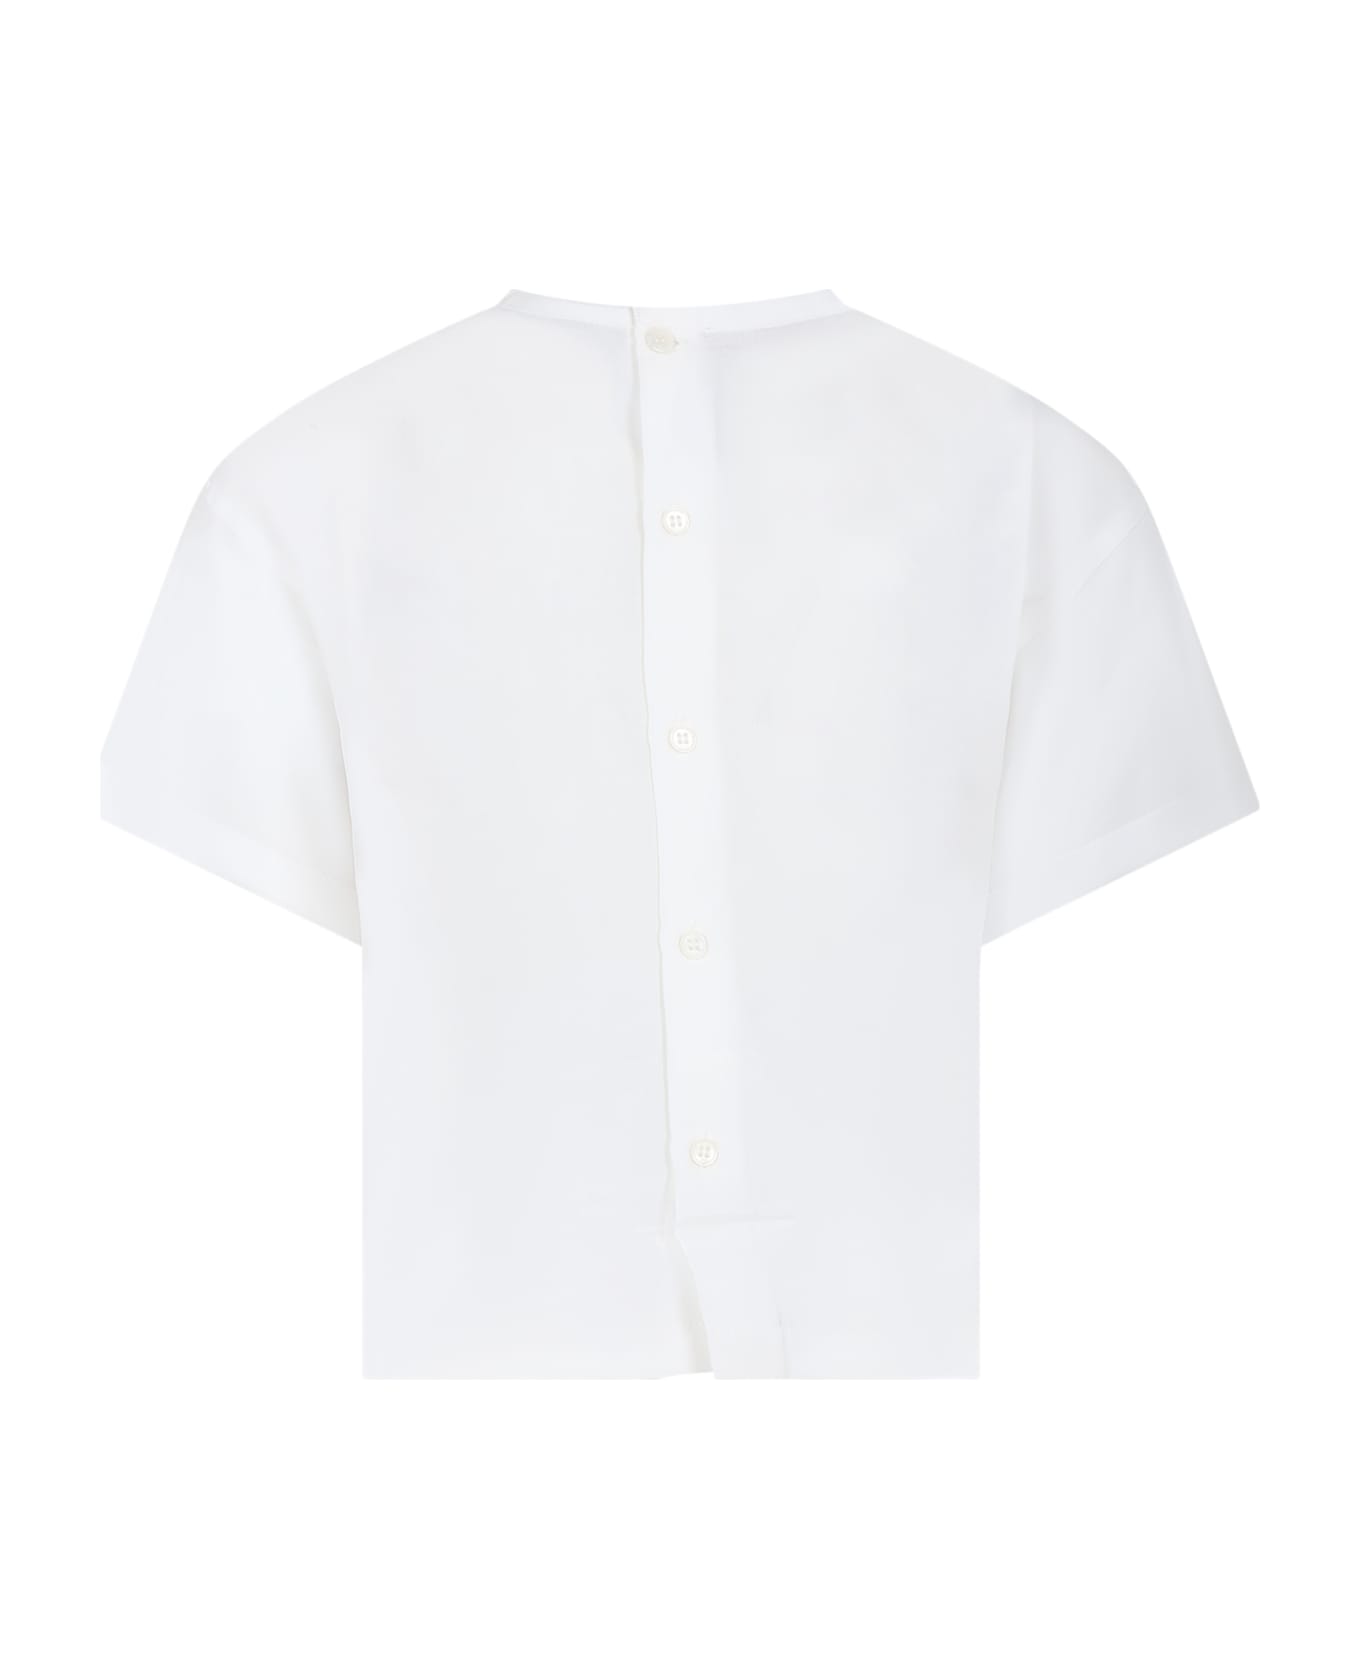 N.21 White T-shirt For Girl - White